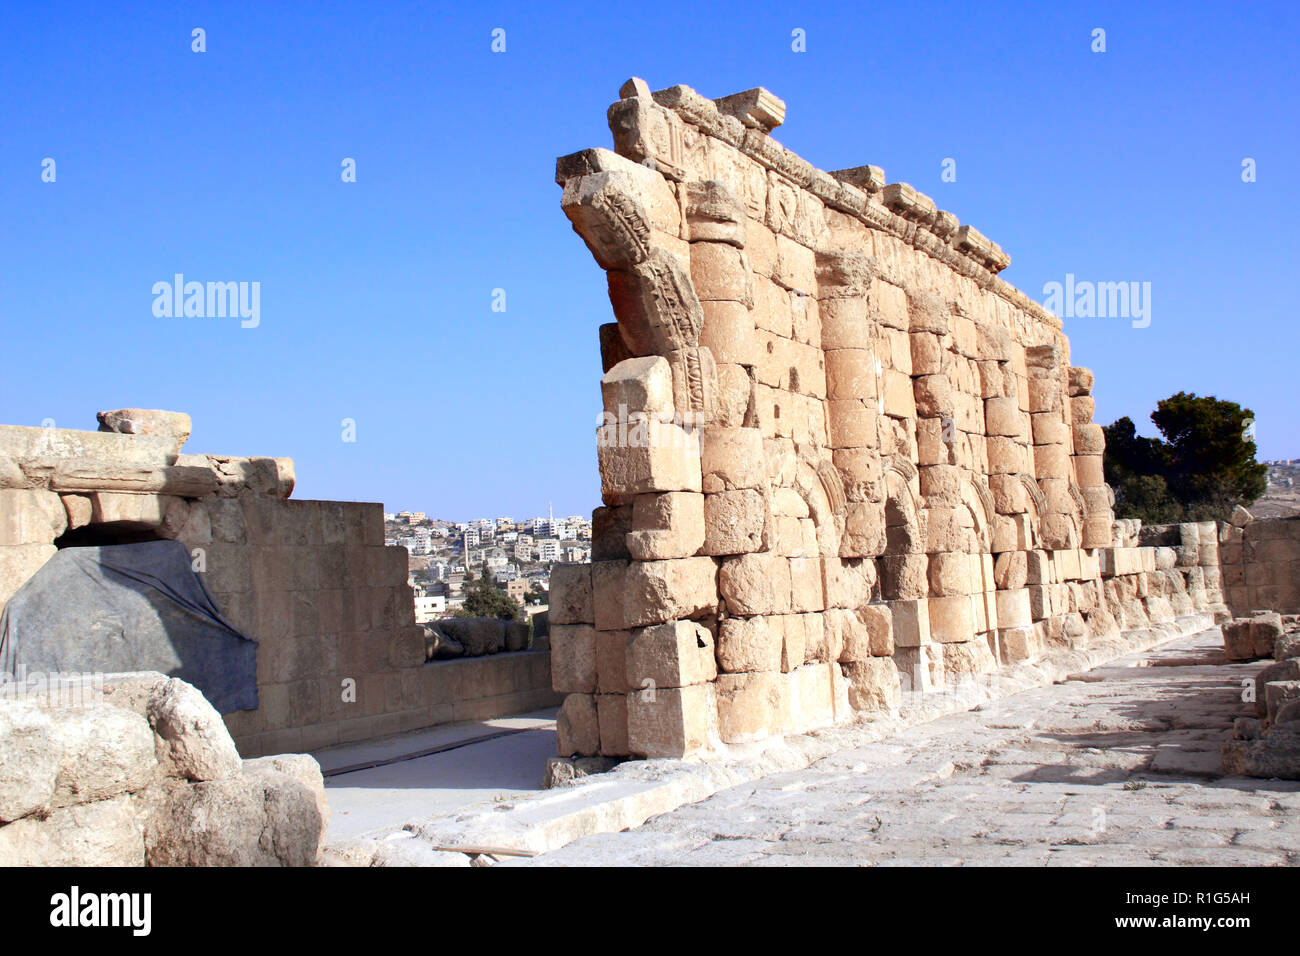 Ruines de l'antique temple avec colonnes de Gérasa (Jerash), ancienne capitale romaine et la plus grande ville du gouvernorat de Jerash, Jordanie, Moyen-Orient. L'UNESCO wor Banque D'Images